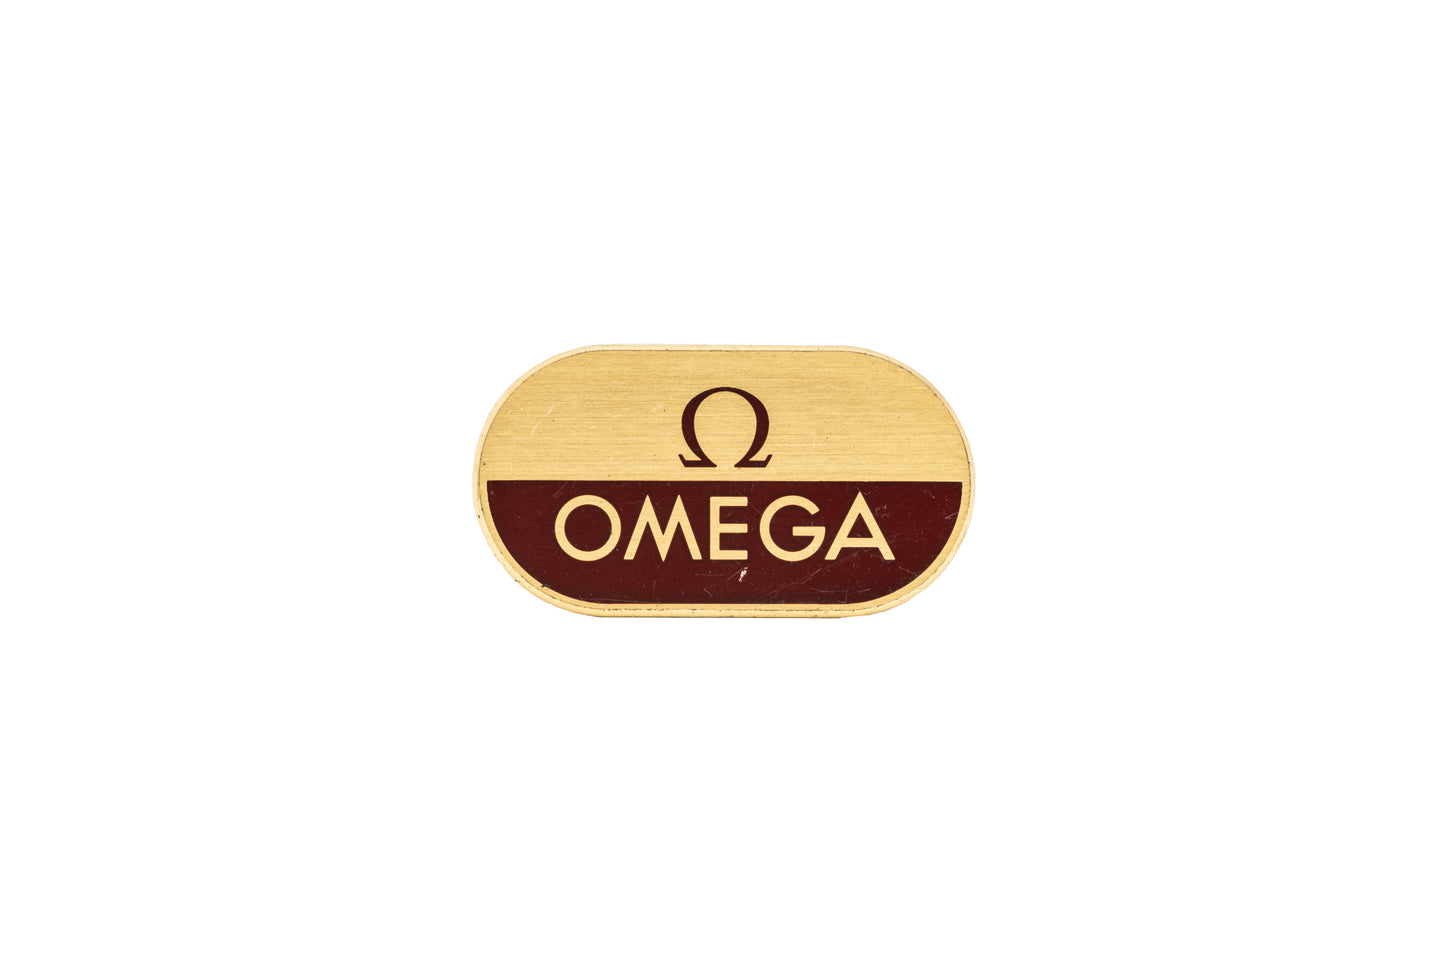 Omega Signage